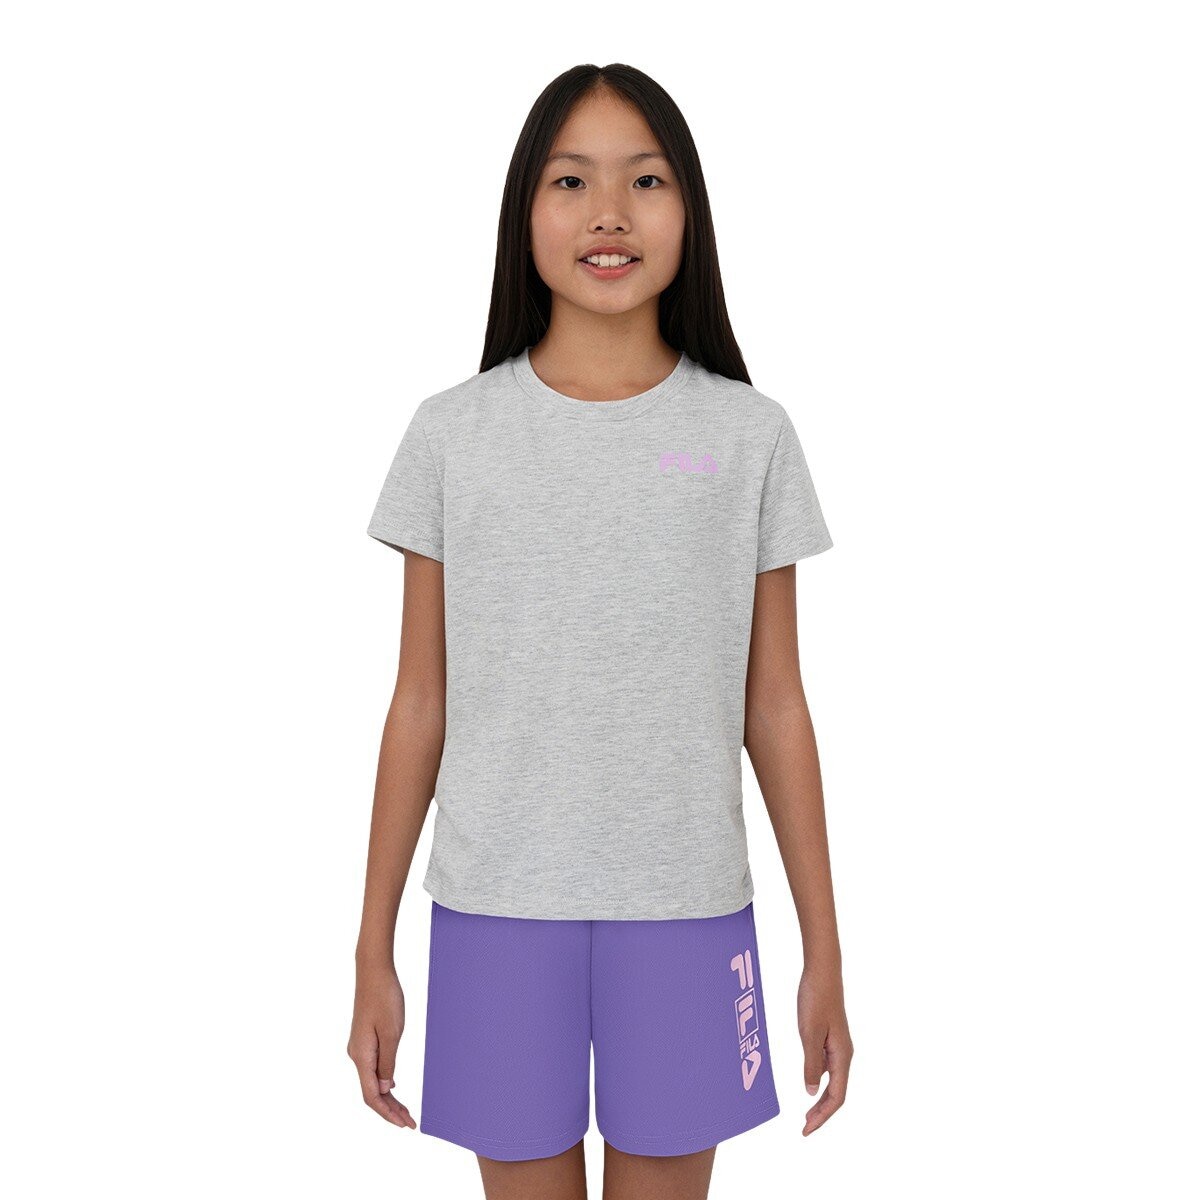 Fila 兒童短袖運動服飾三件組 紫色組